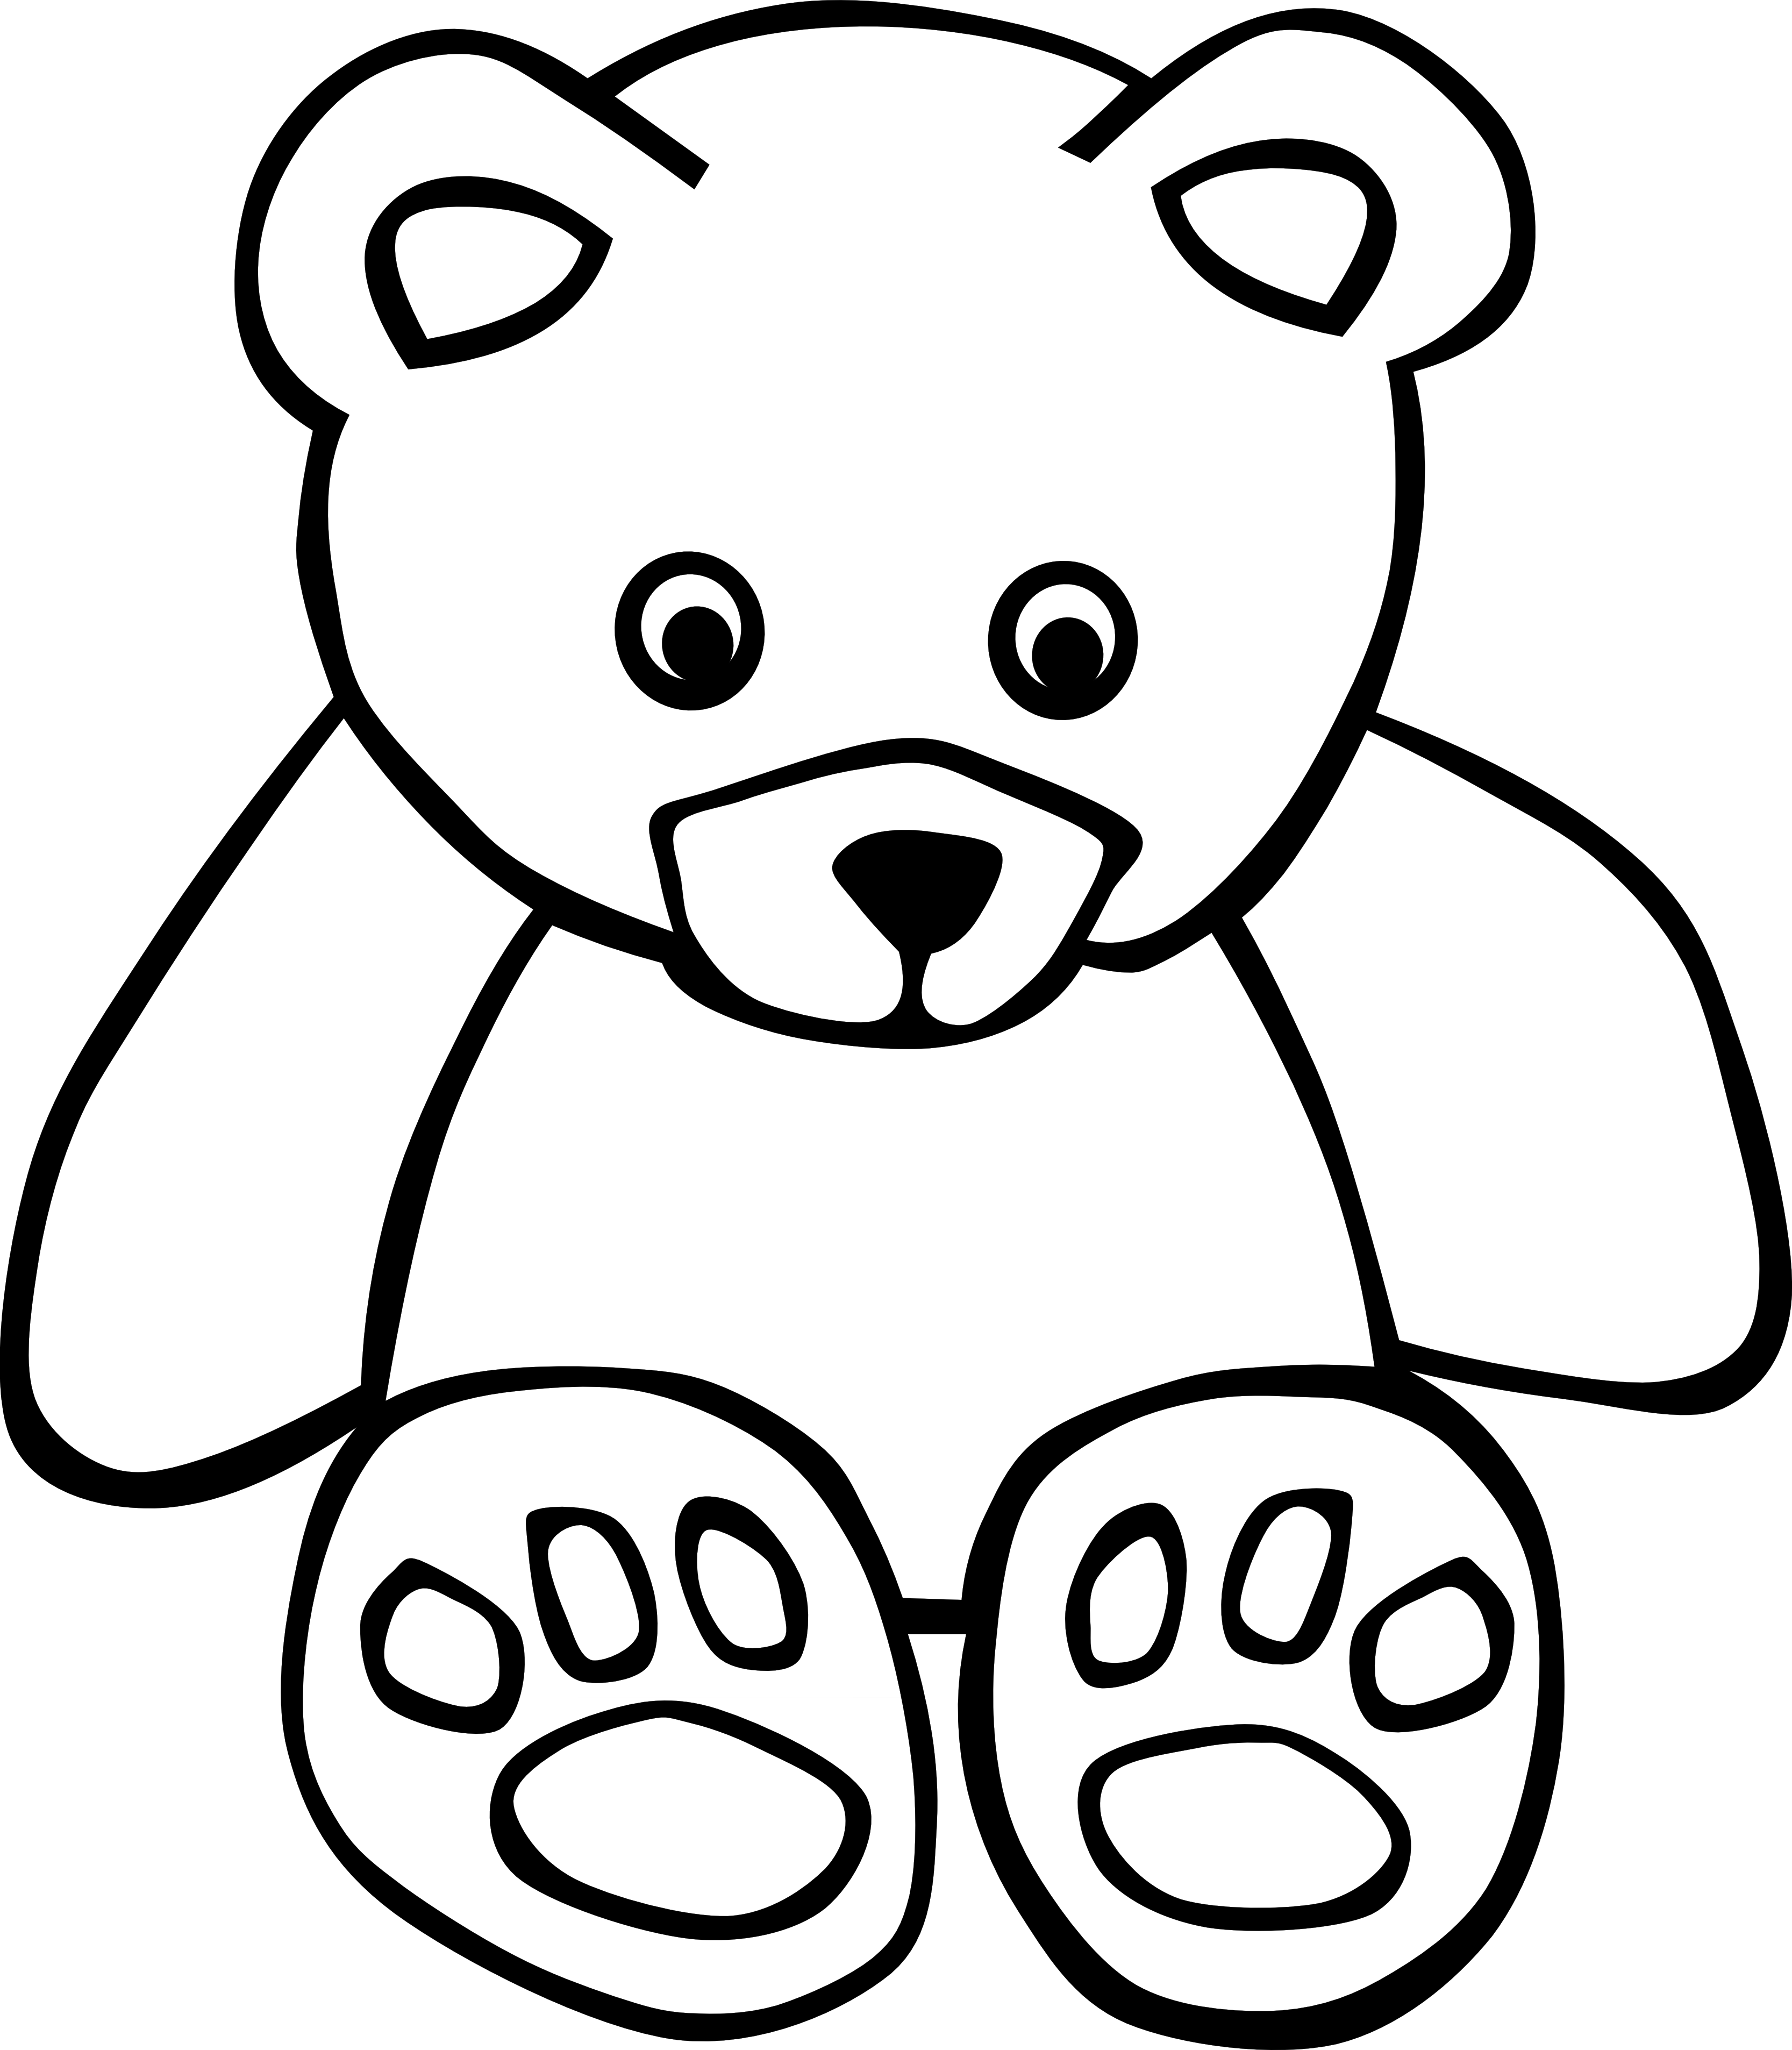 Teddy bear clip art on teddy bears clip art and bears 2 clipartwiz 3